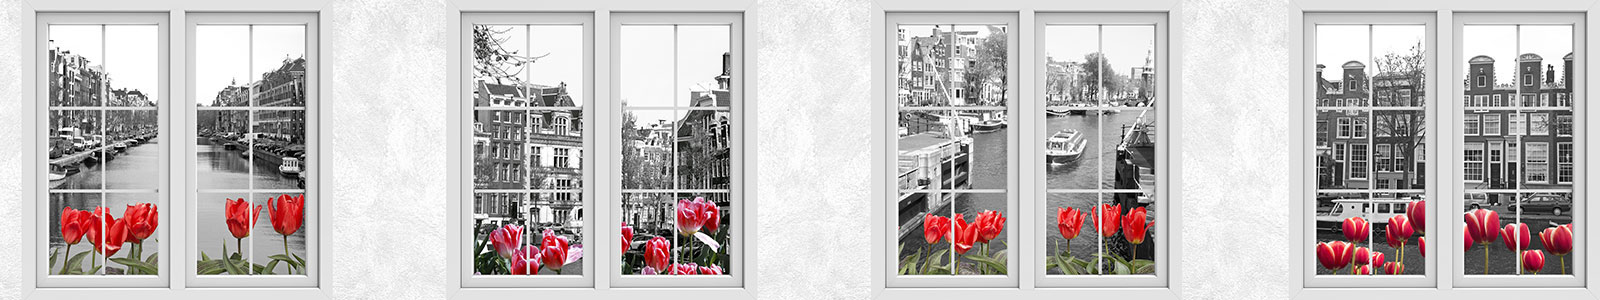 №5212 - Вид из окна на черно-белый Амстердам с красными тюльпанами